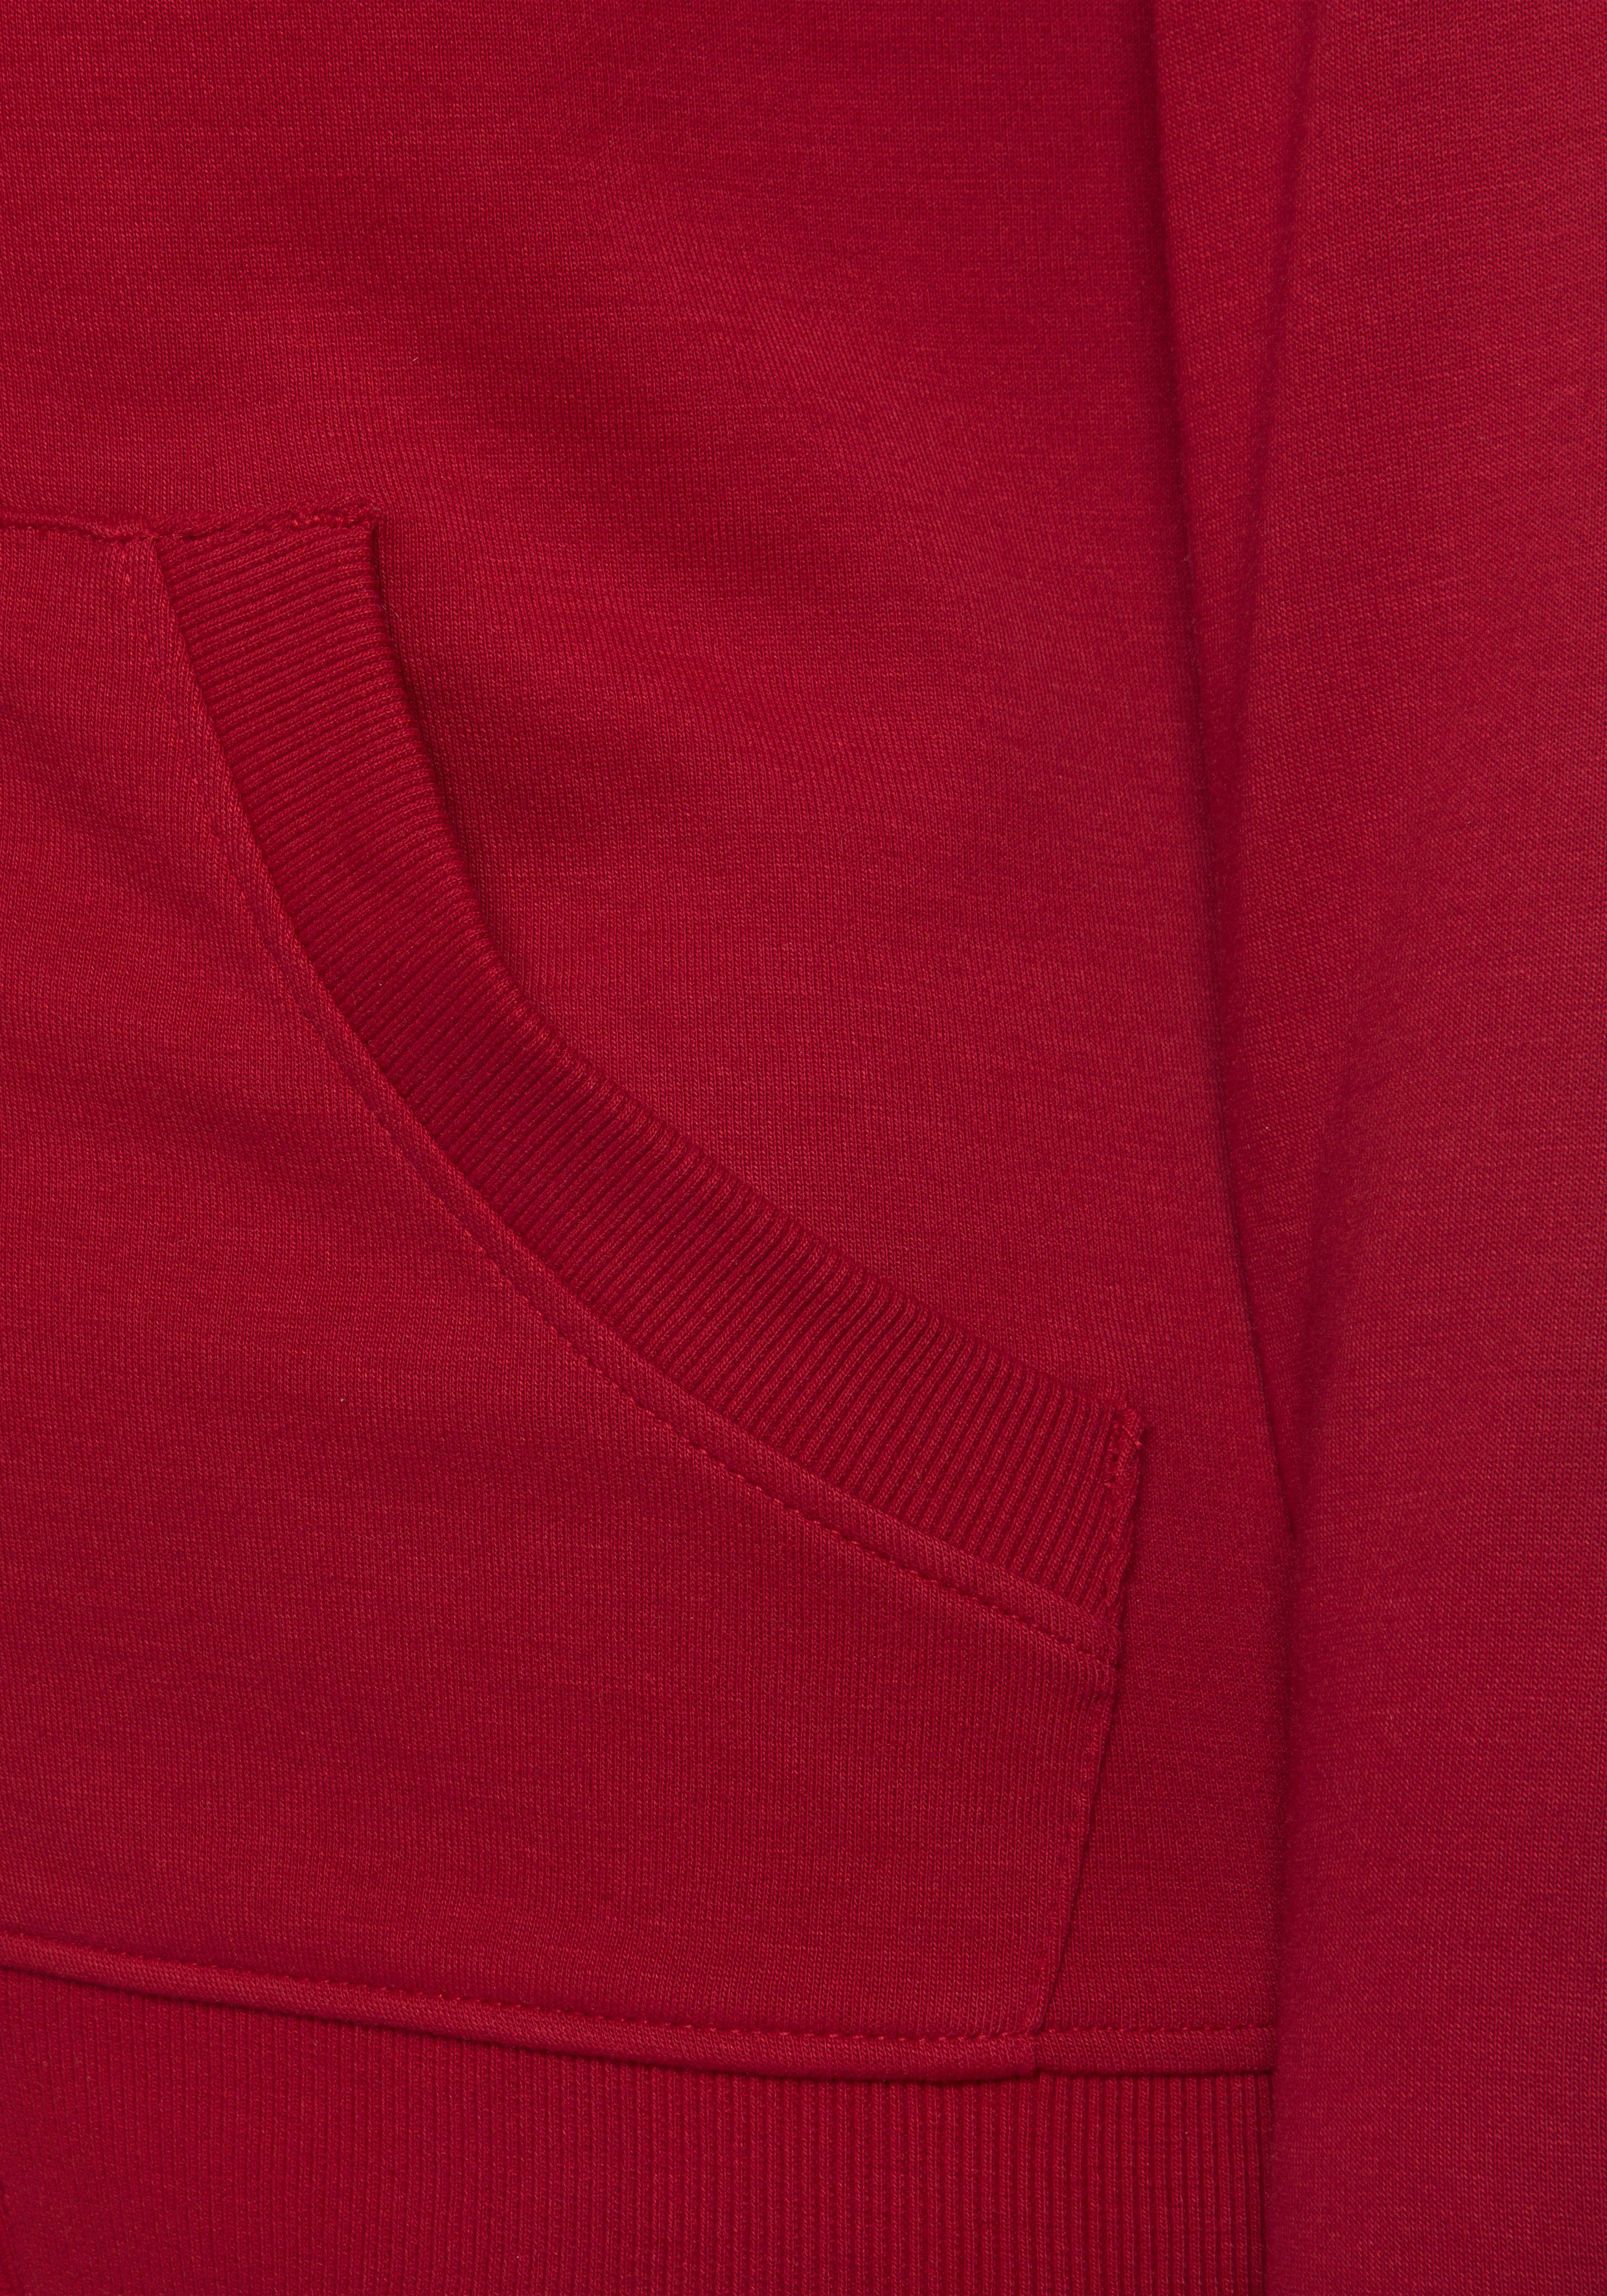 H.I.S Kapuzensweatjacke mit Kapuze seitlichen Taschen, Loungeanzug rot und